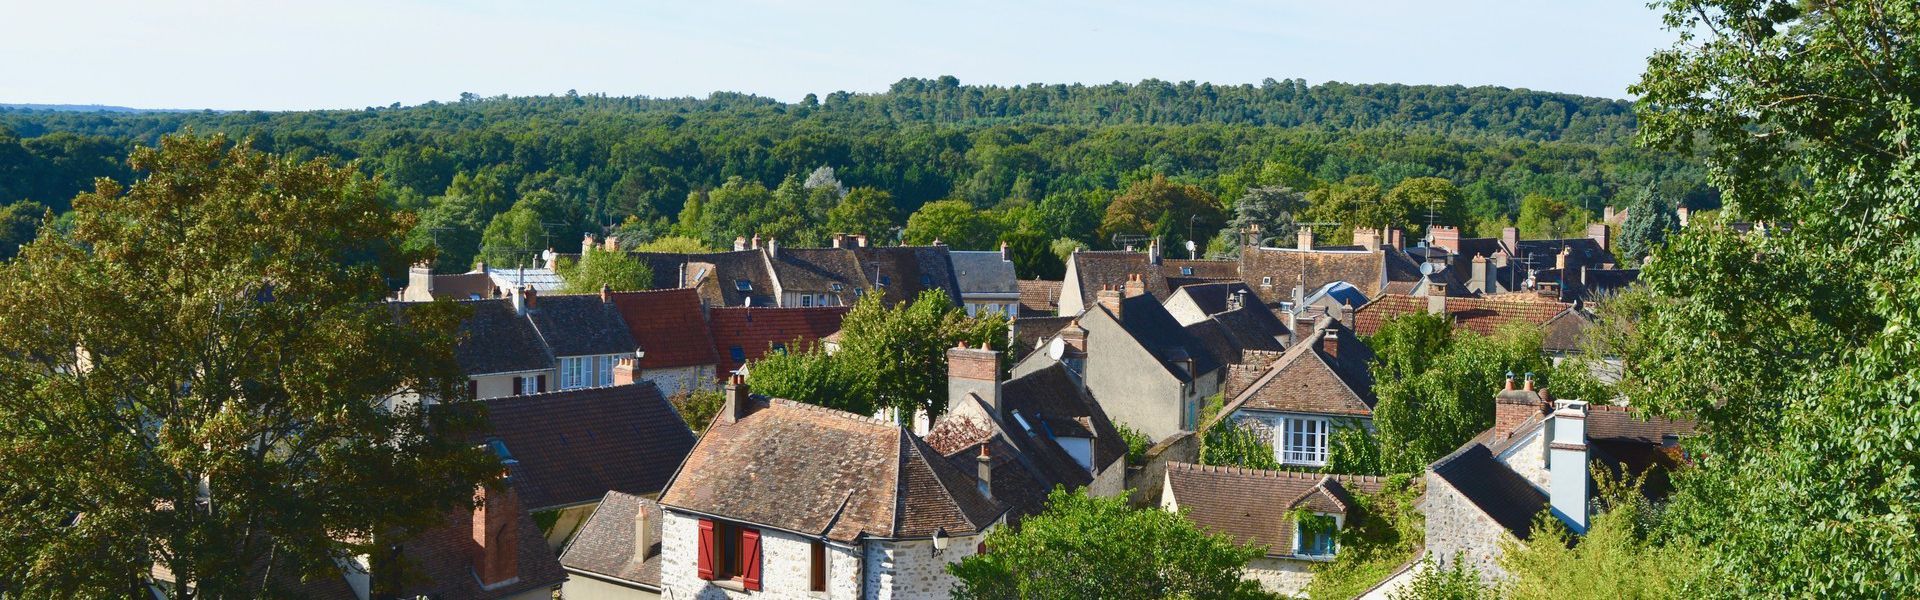 Clairefontaine-en-Yvelines, Rambouillet, Saint-Arnoult-en-Yvelines, Rochefort-en-Yvelines, Longvilliers, Gazeran, la Celle-les-Bordes, Bullion, Vieille-Eglise-en-Yvelines, Sonchamp